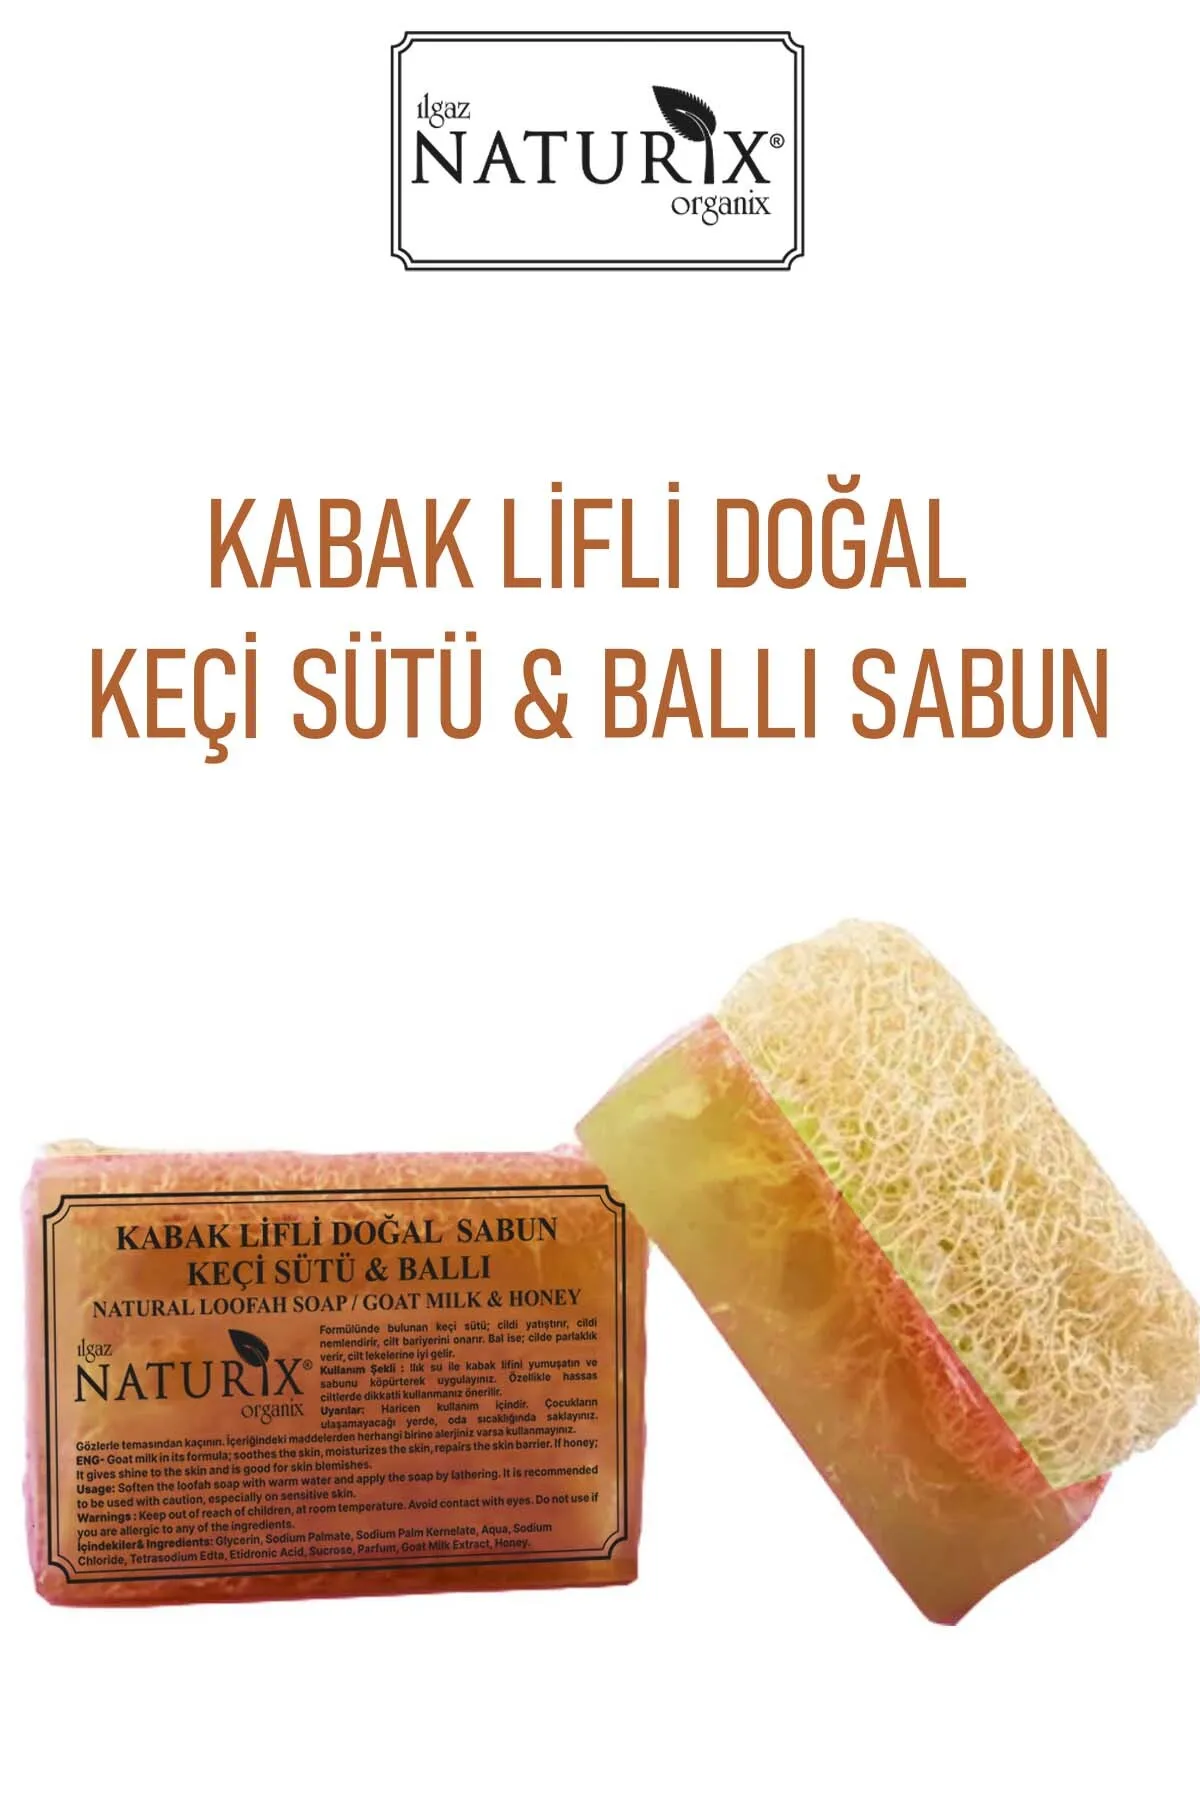 Naturix Kabak Lifli Doğal Keçi Sütü Ballı Sabun 130 g - 2